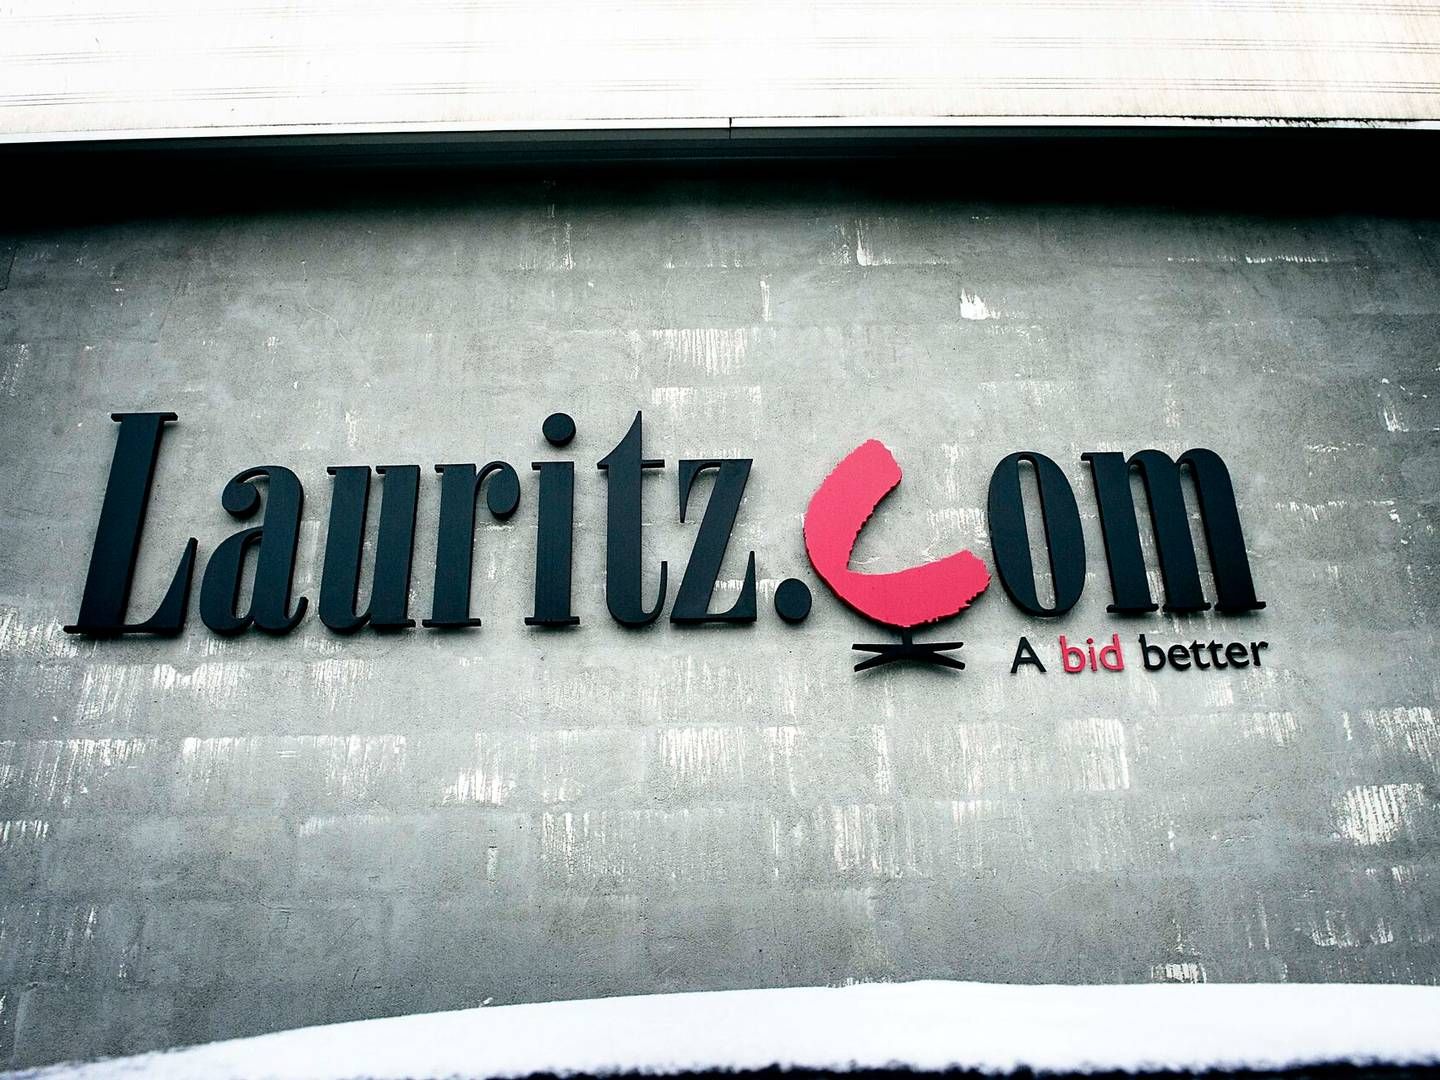 Onsdag kom det frem, at Lauritz.com har forsøgt at betale flere kunder med beviser på tilgodehavender. | Foto: Jens Dige/ritzau Scanpix